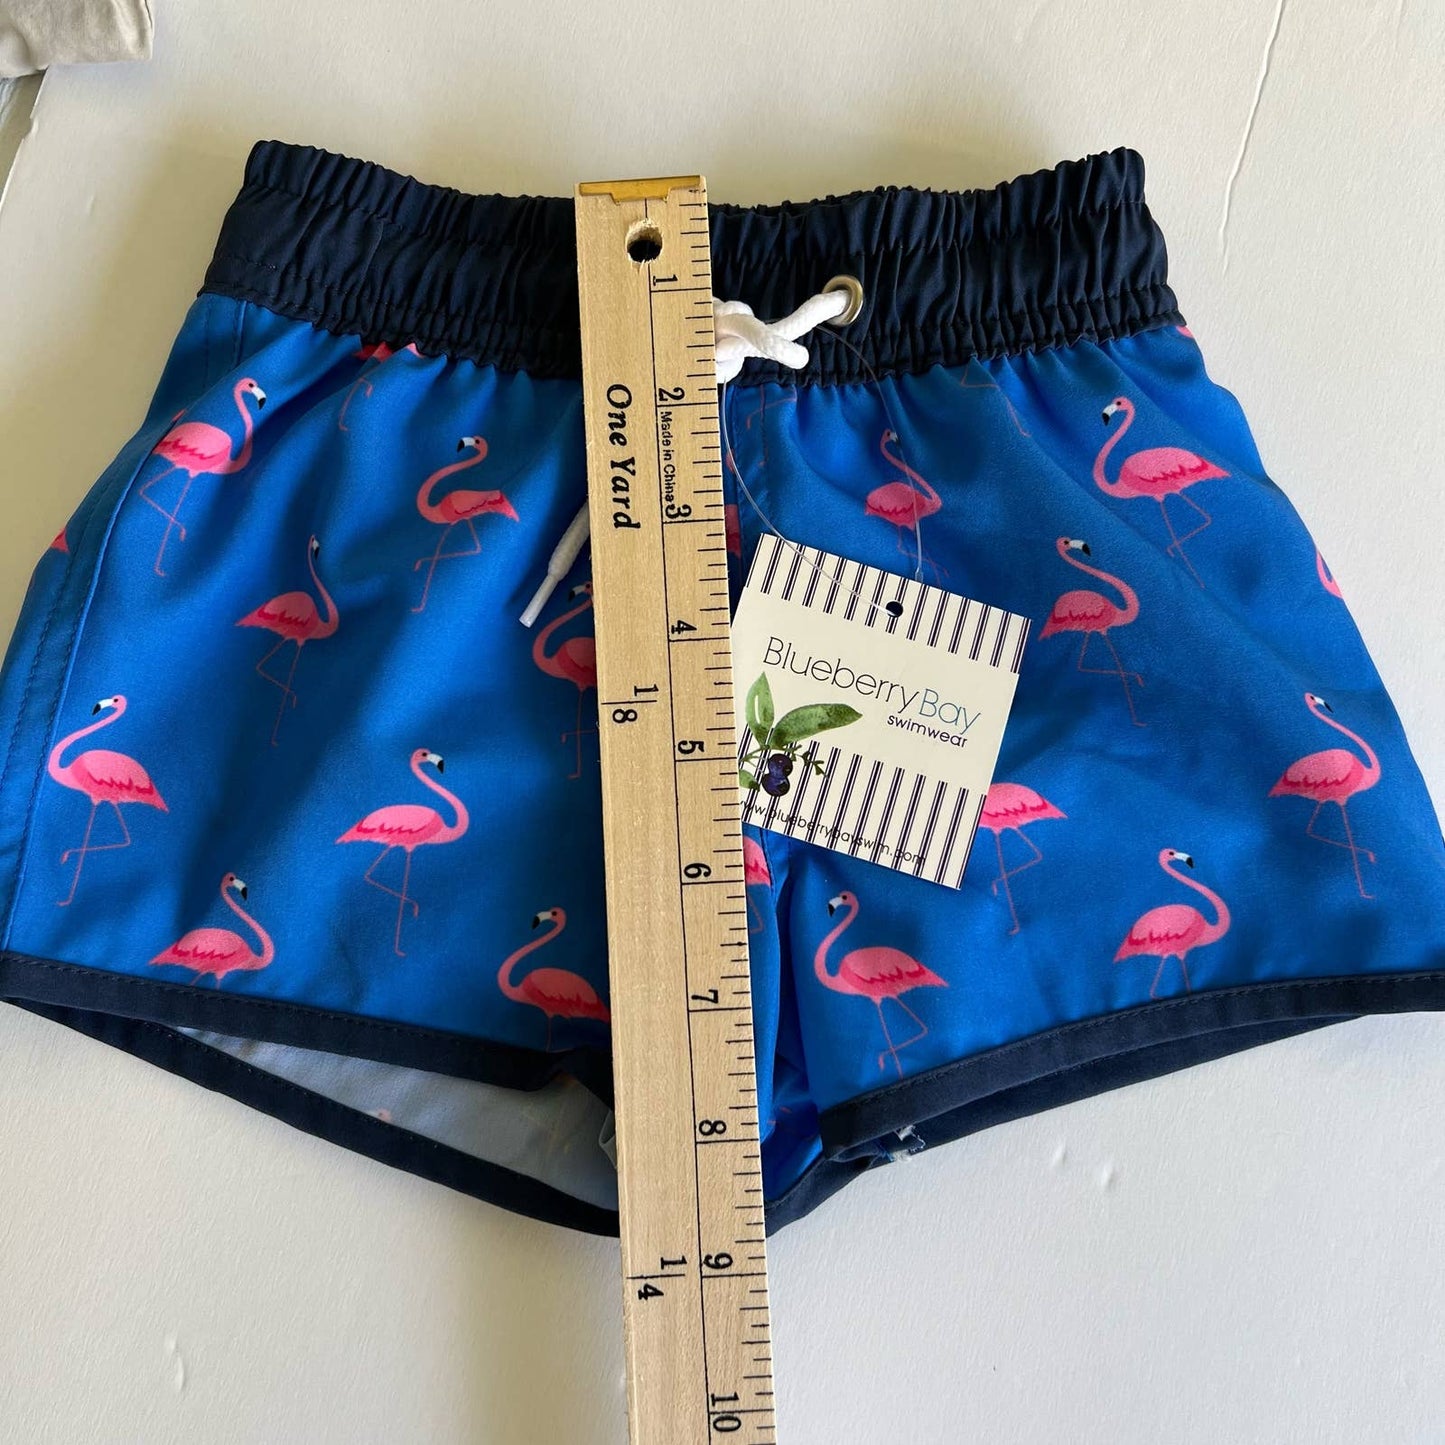 Blueberry Bay boys, flamingo, swim trunks Size 2T